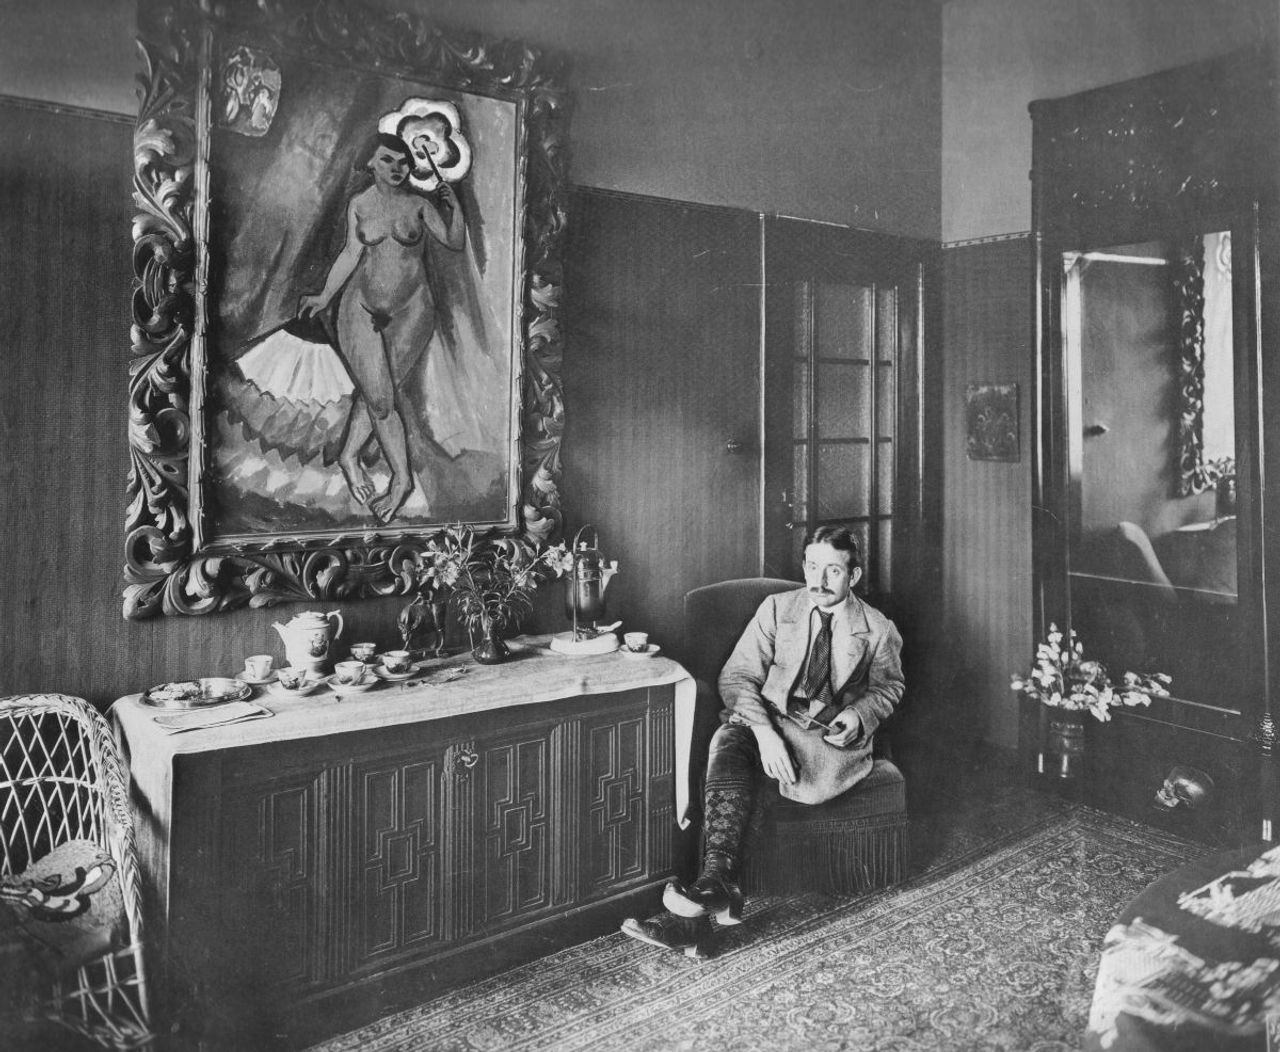 Max Pechstein in his house in Berlin-Zehlendorf, 1915